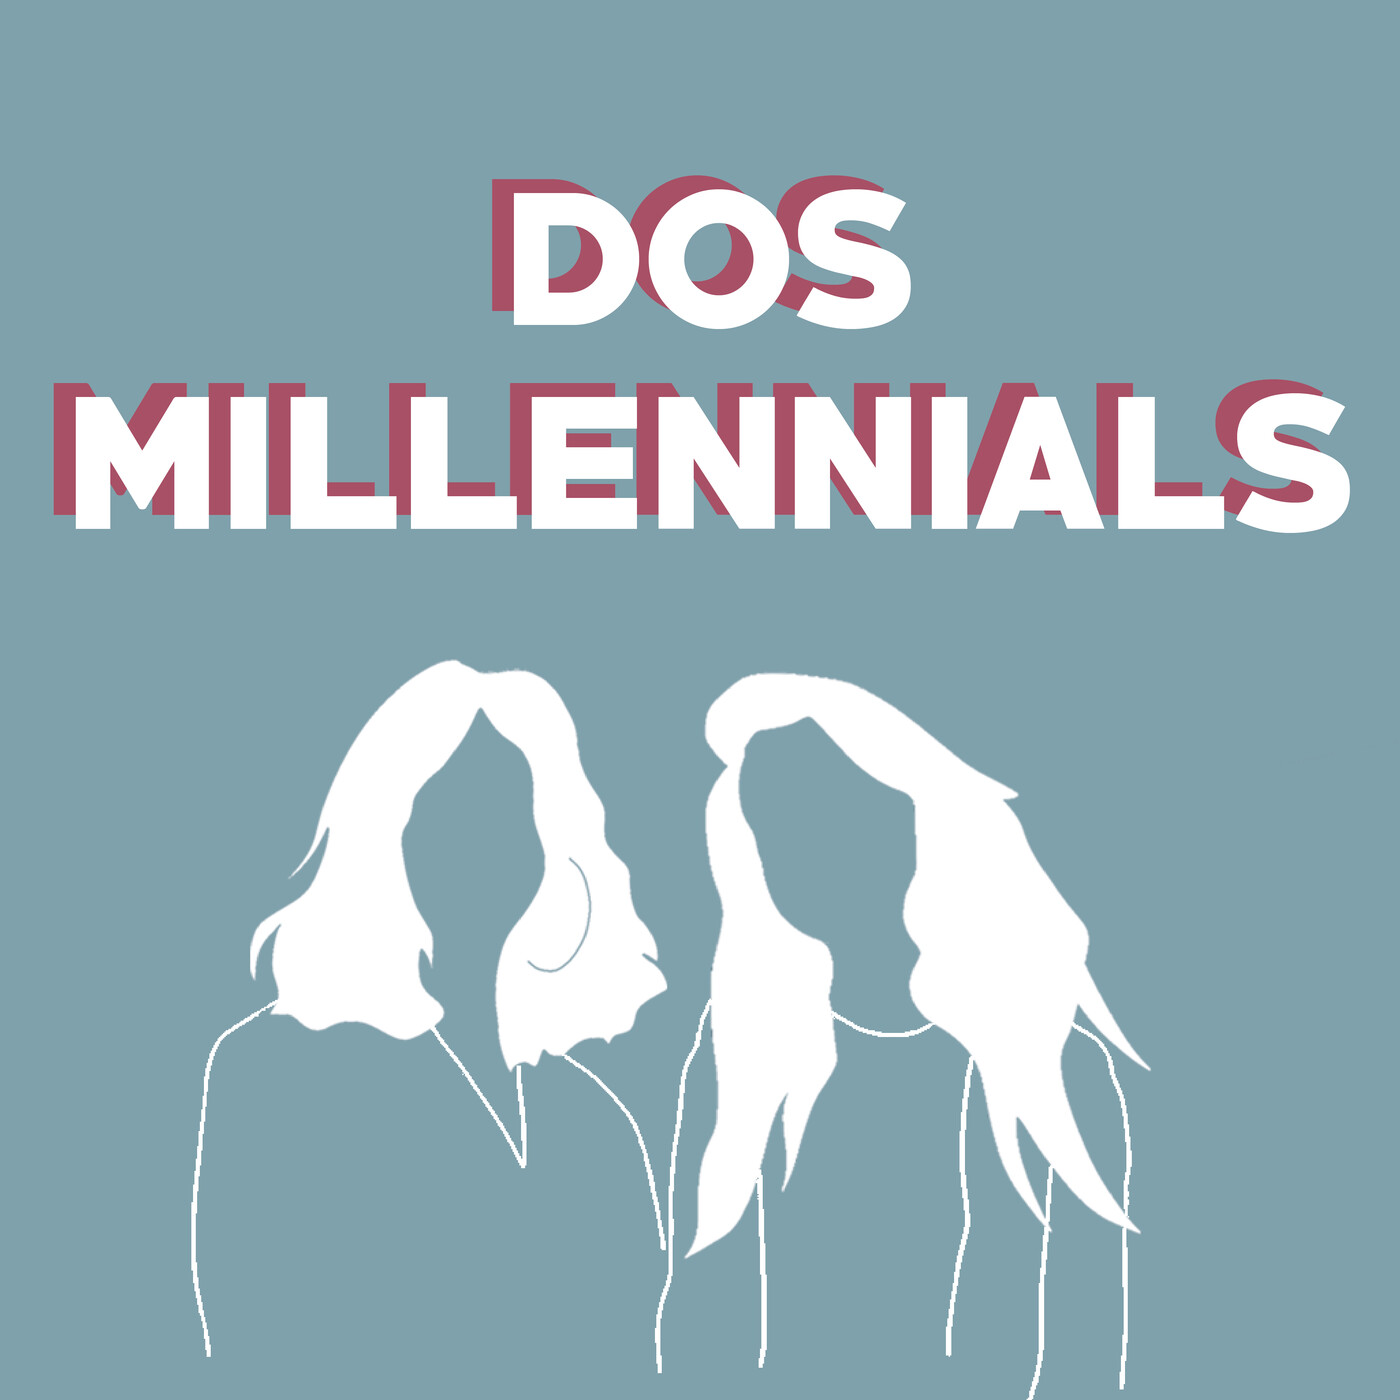 Dos millennials